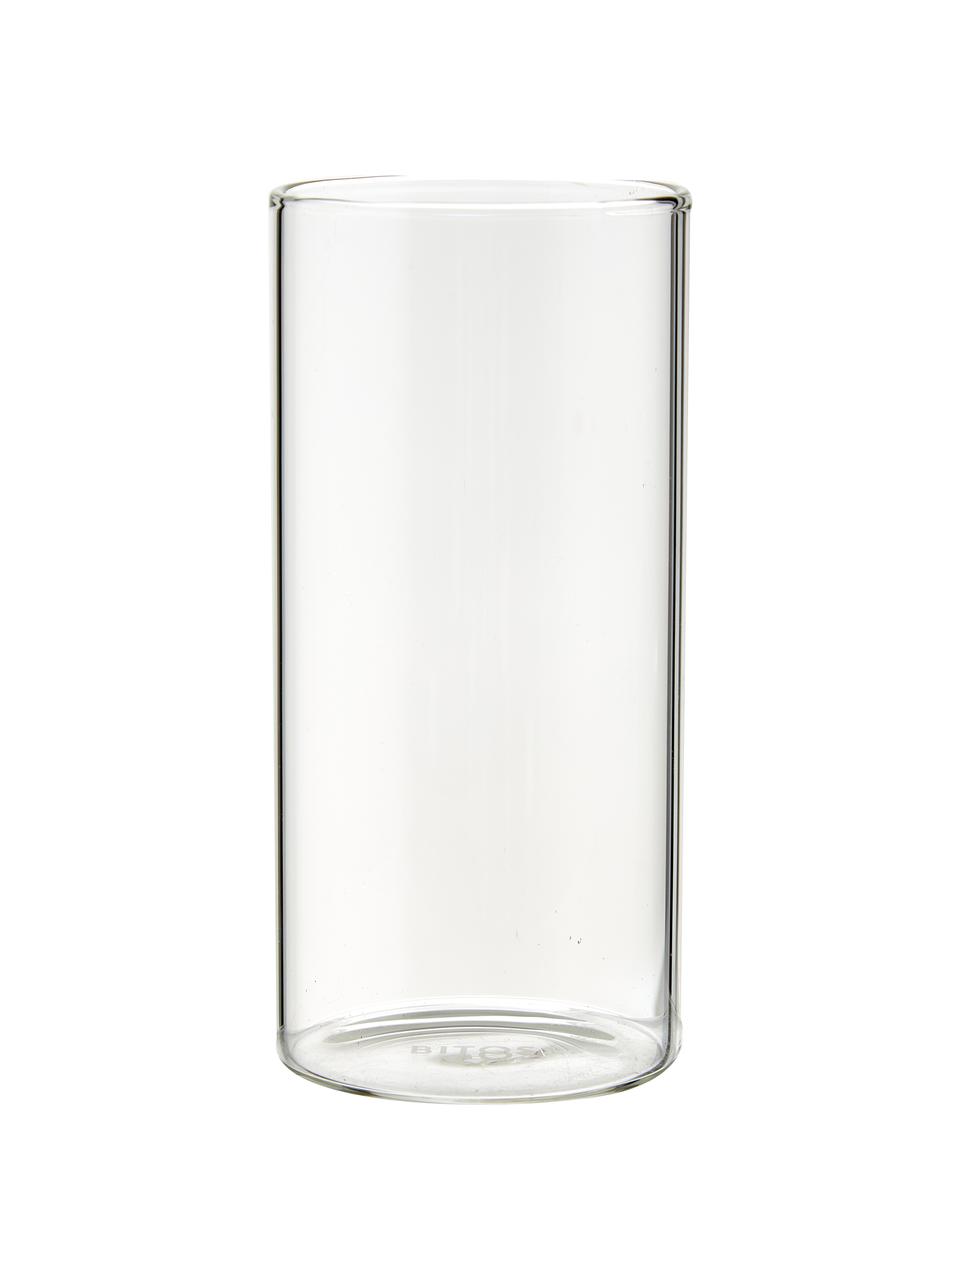 Bicchiere acqua in vetro borosilicato Boro 6 pz, Vetro borosilicato, Trasparente, Ø 6 x Alt. 12 cm